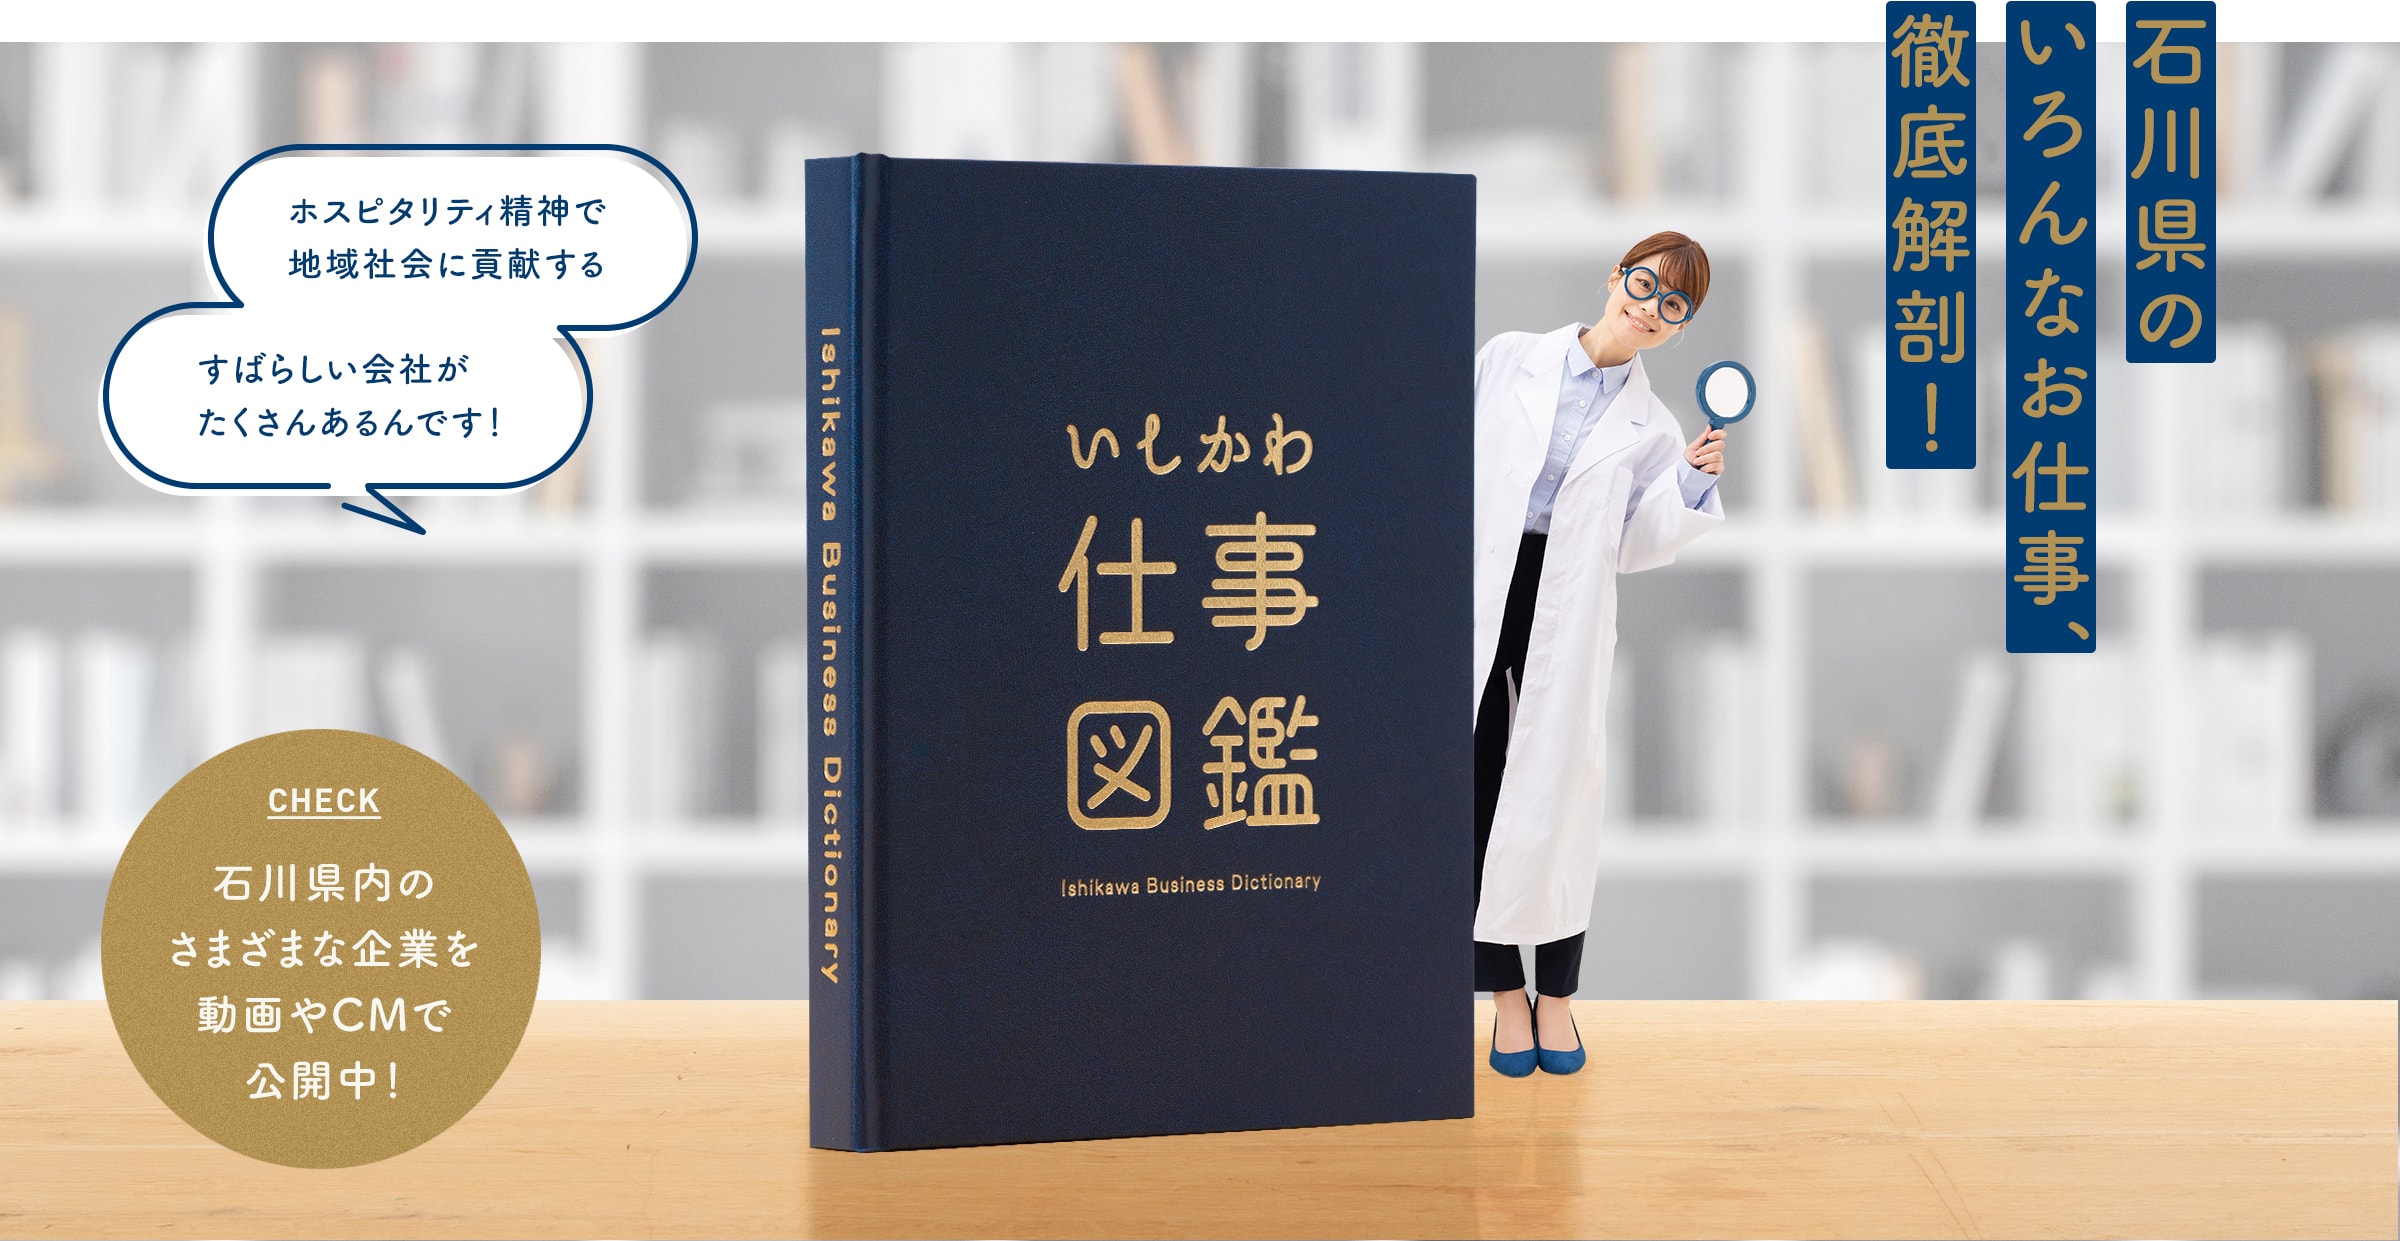 「いしかわ仕事図鑑」で石川県で活躍する企業やビジネスを徹底解剖！